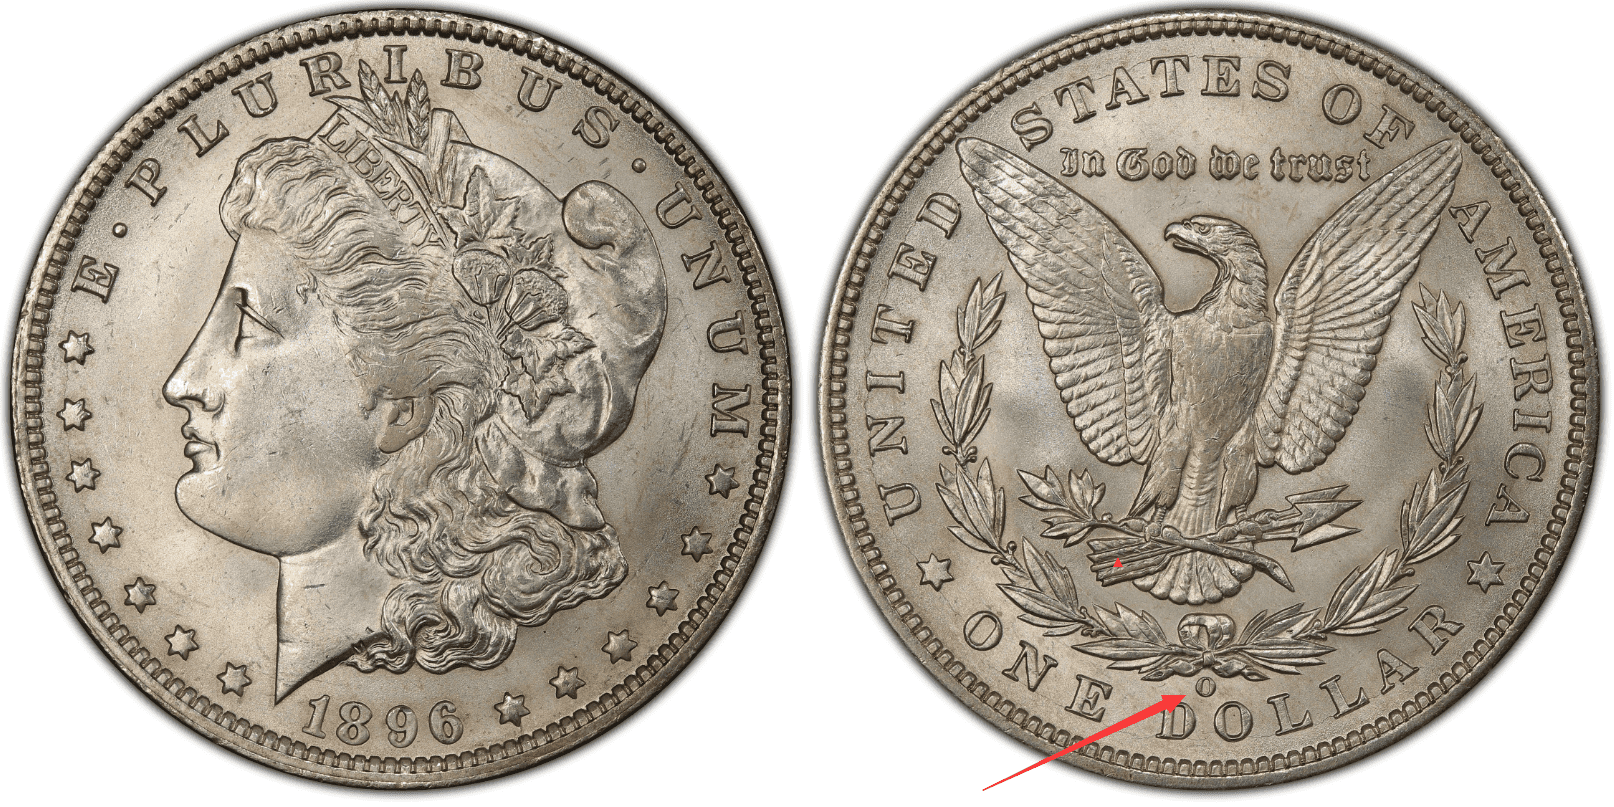 1896 O Silver Dollar Value